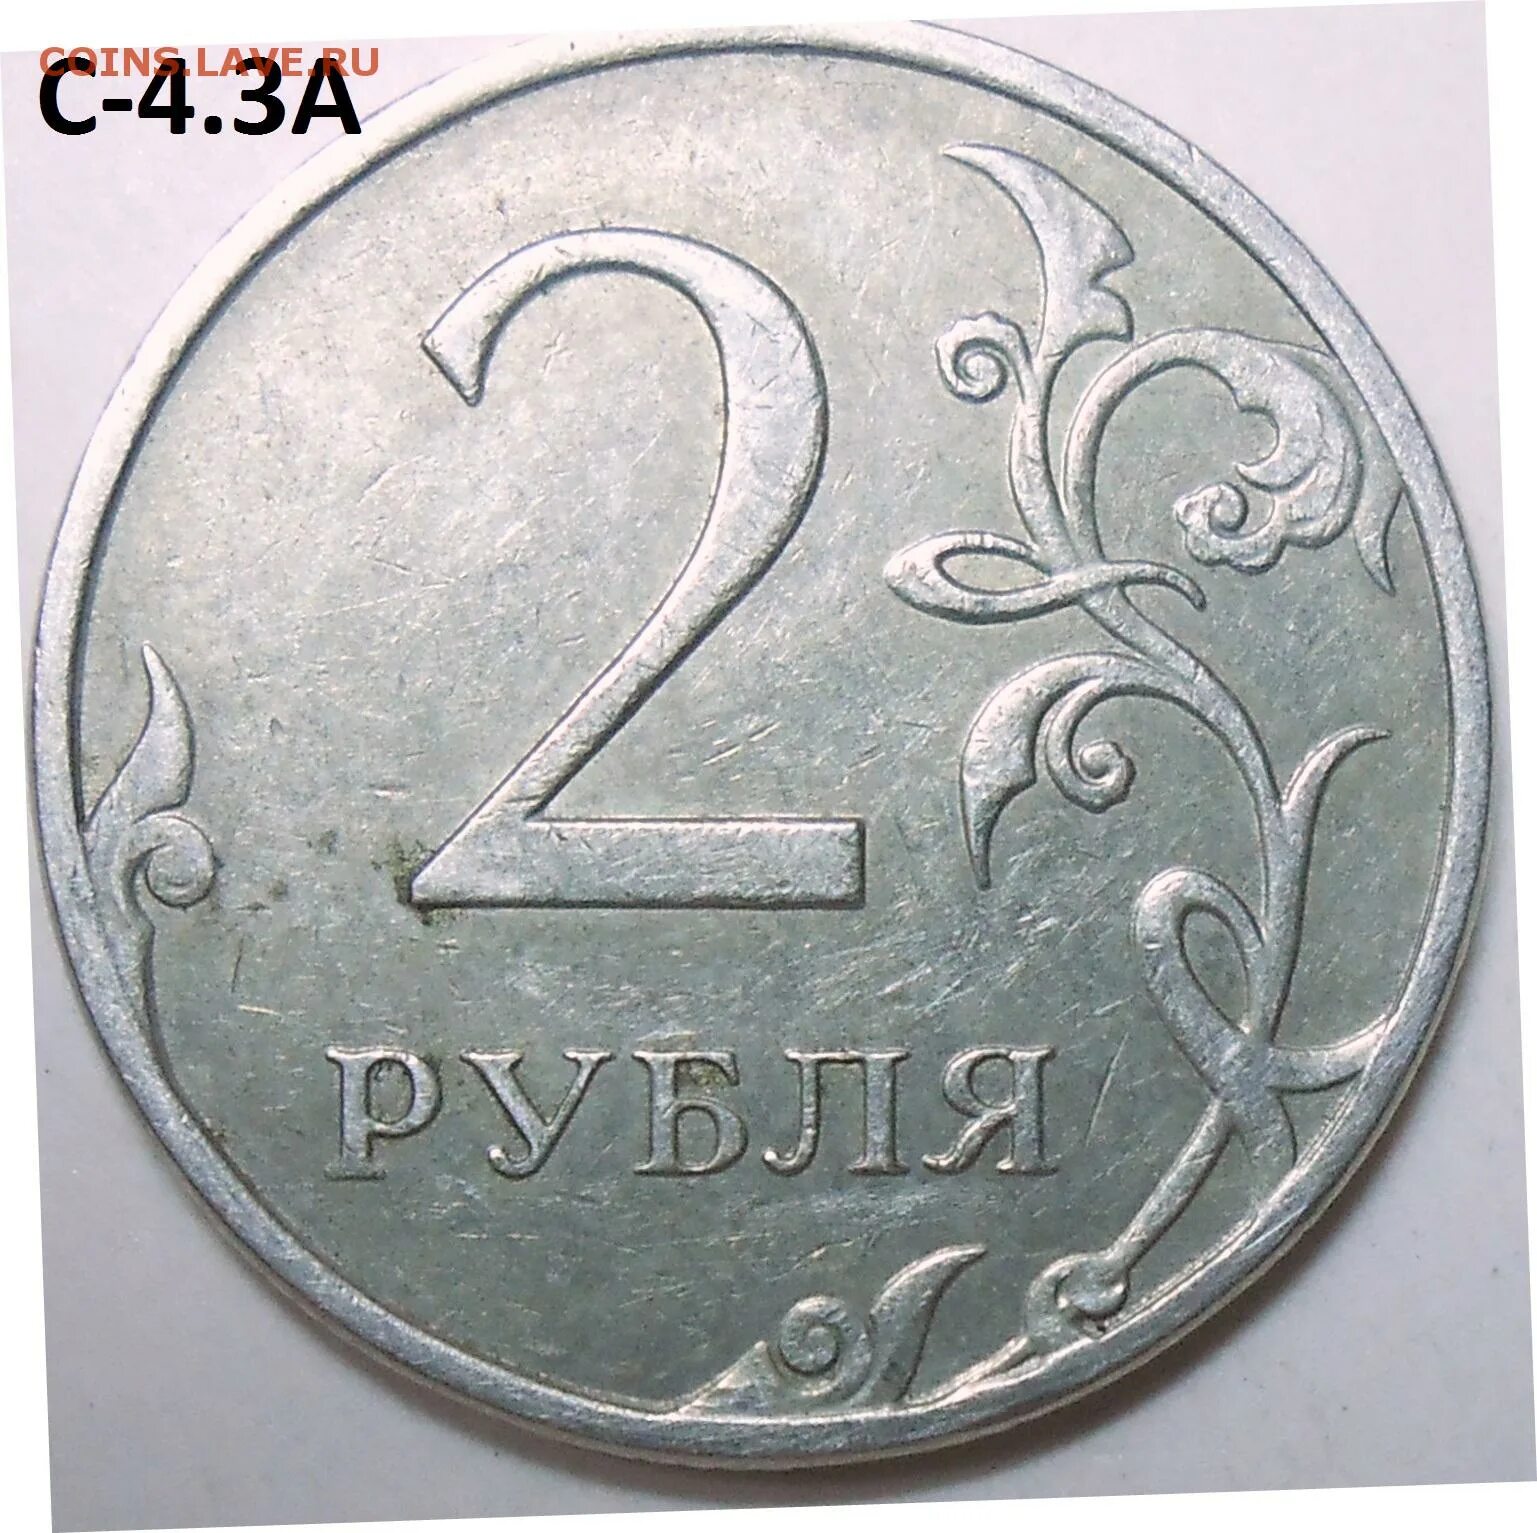 35 рублей килограмм